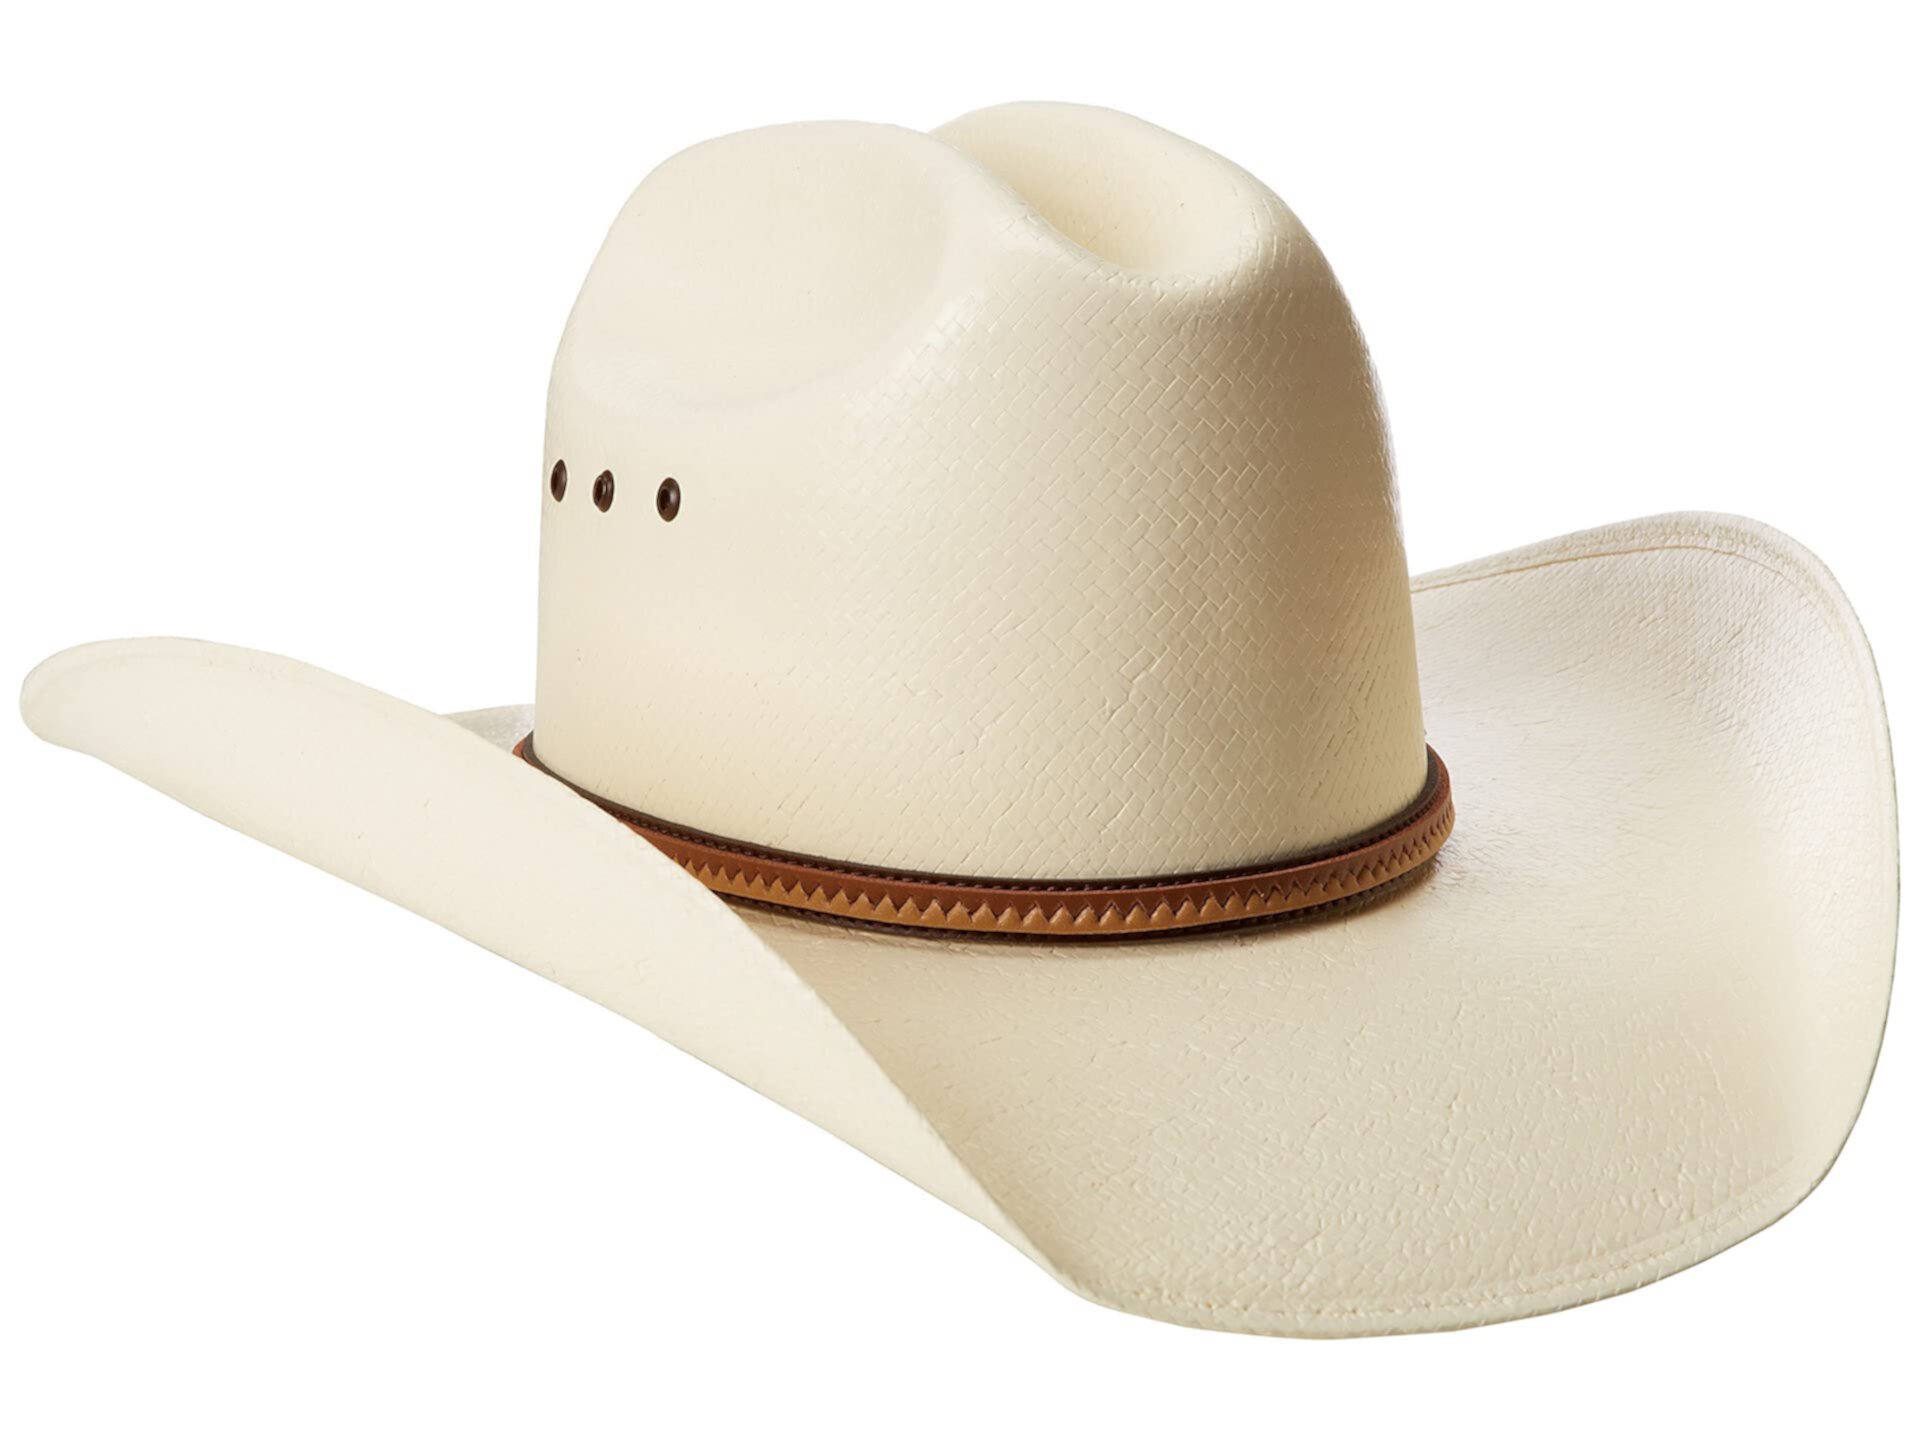 Каска ковбой. Каска защитная ковбойская шляпа. Шляпы Justin. Каска в виде ковбойской шляпы.